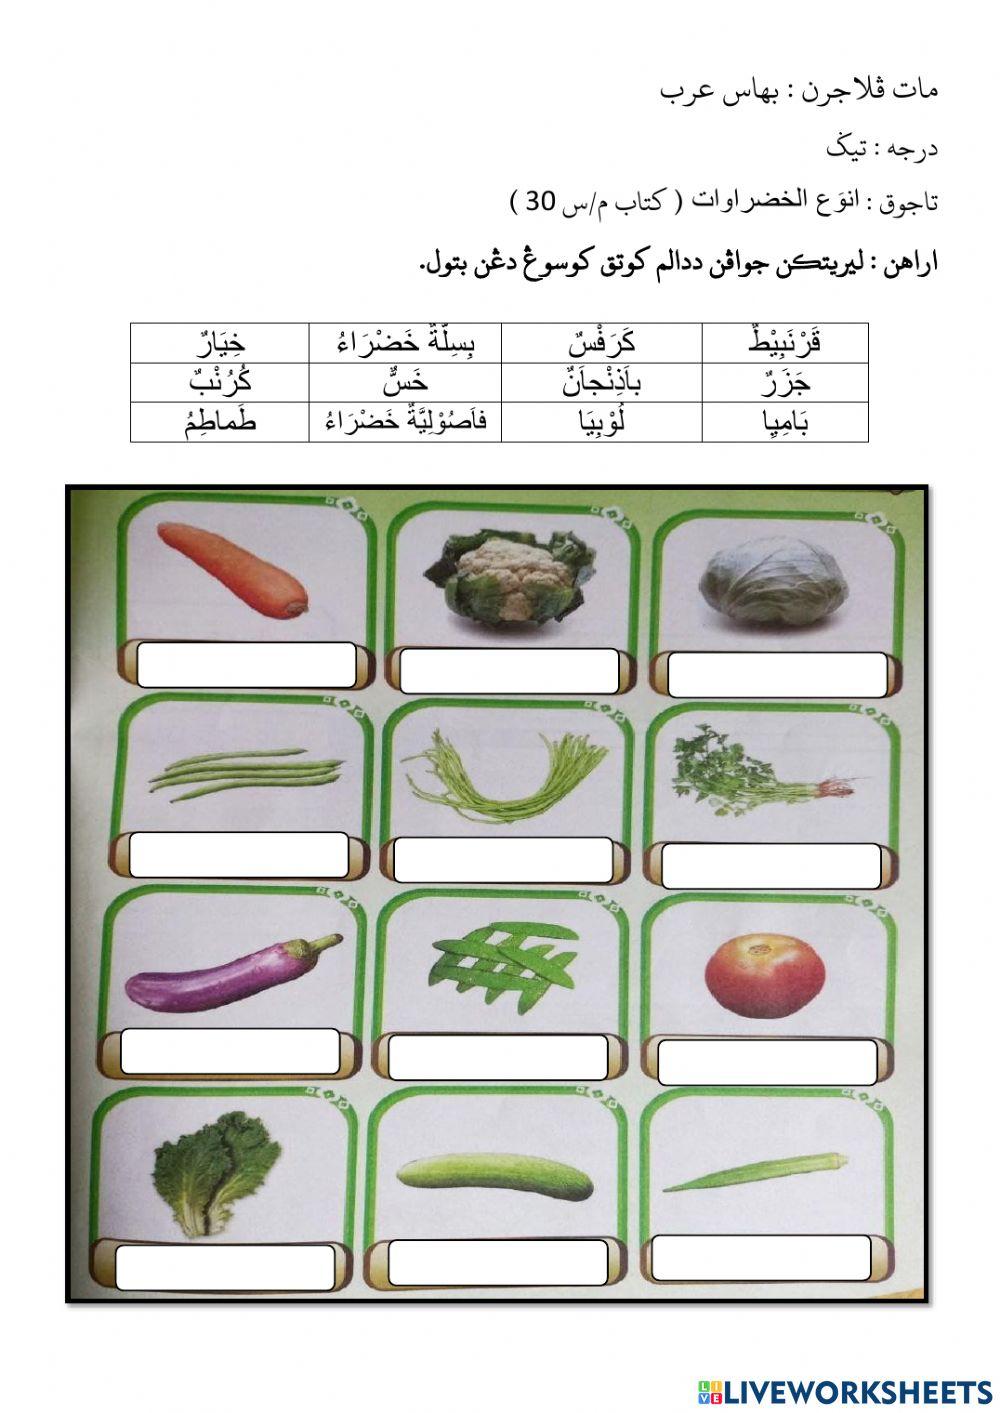 Nama sayur sayuran